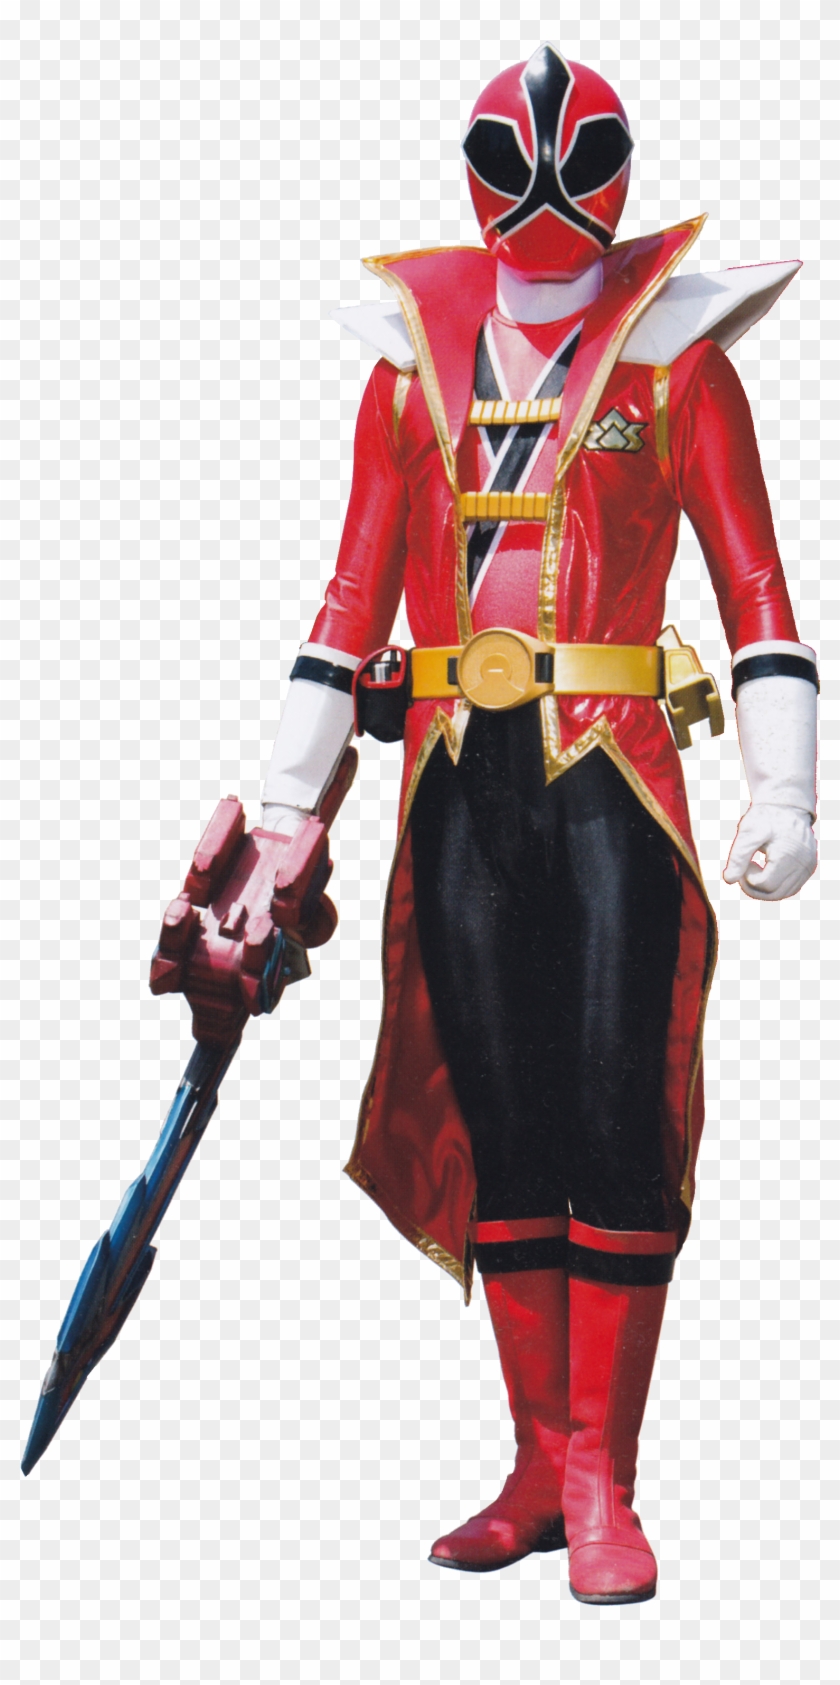 Power Rangers Png Hd - Power Ranger Super Samurai Red Ranger Clipart #3203569